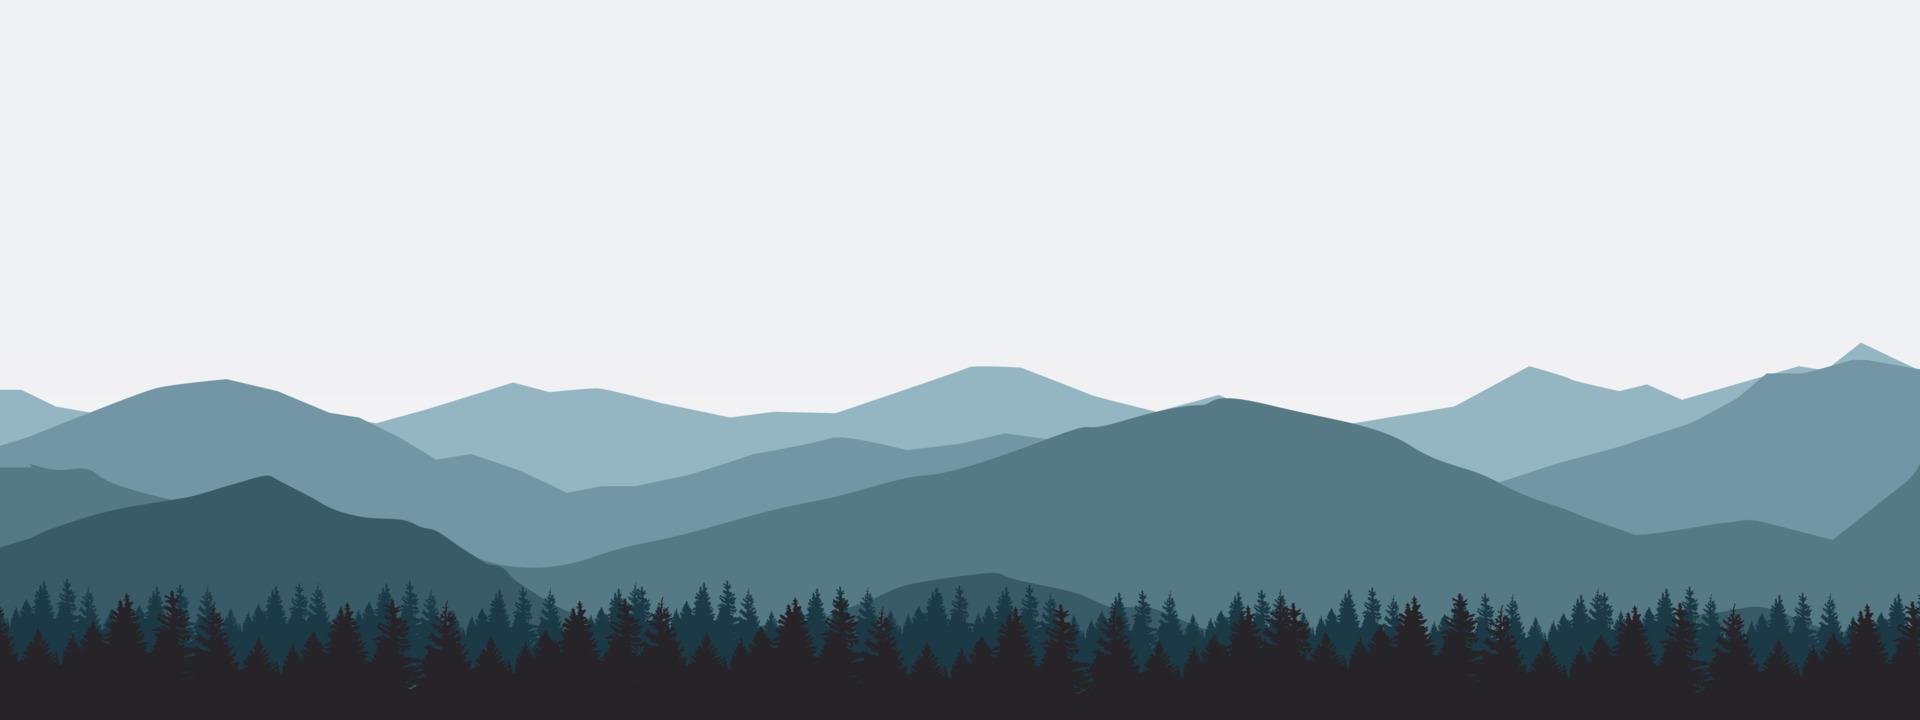 Landschaft Berglandschaft schöne dunkelblaue Berge mit Nebel Sonnenaufgang und Sonnenuntergang. vektor